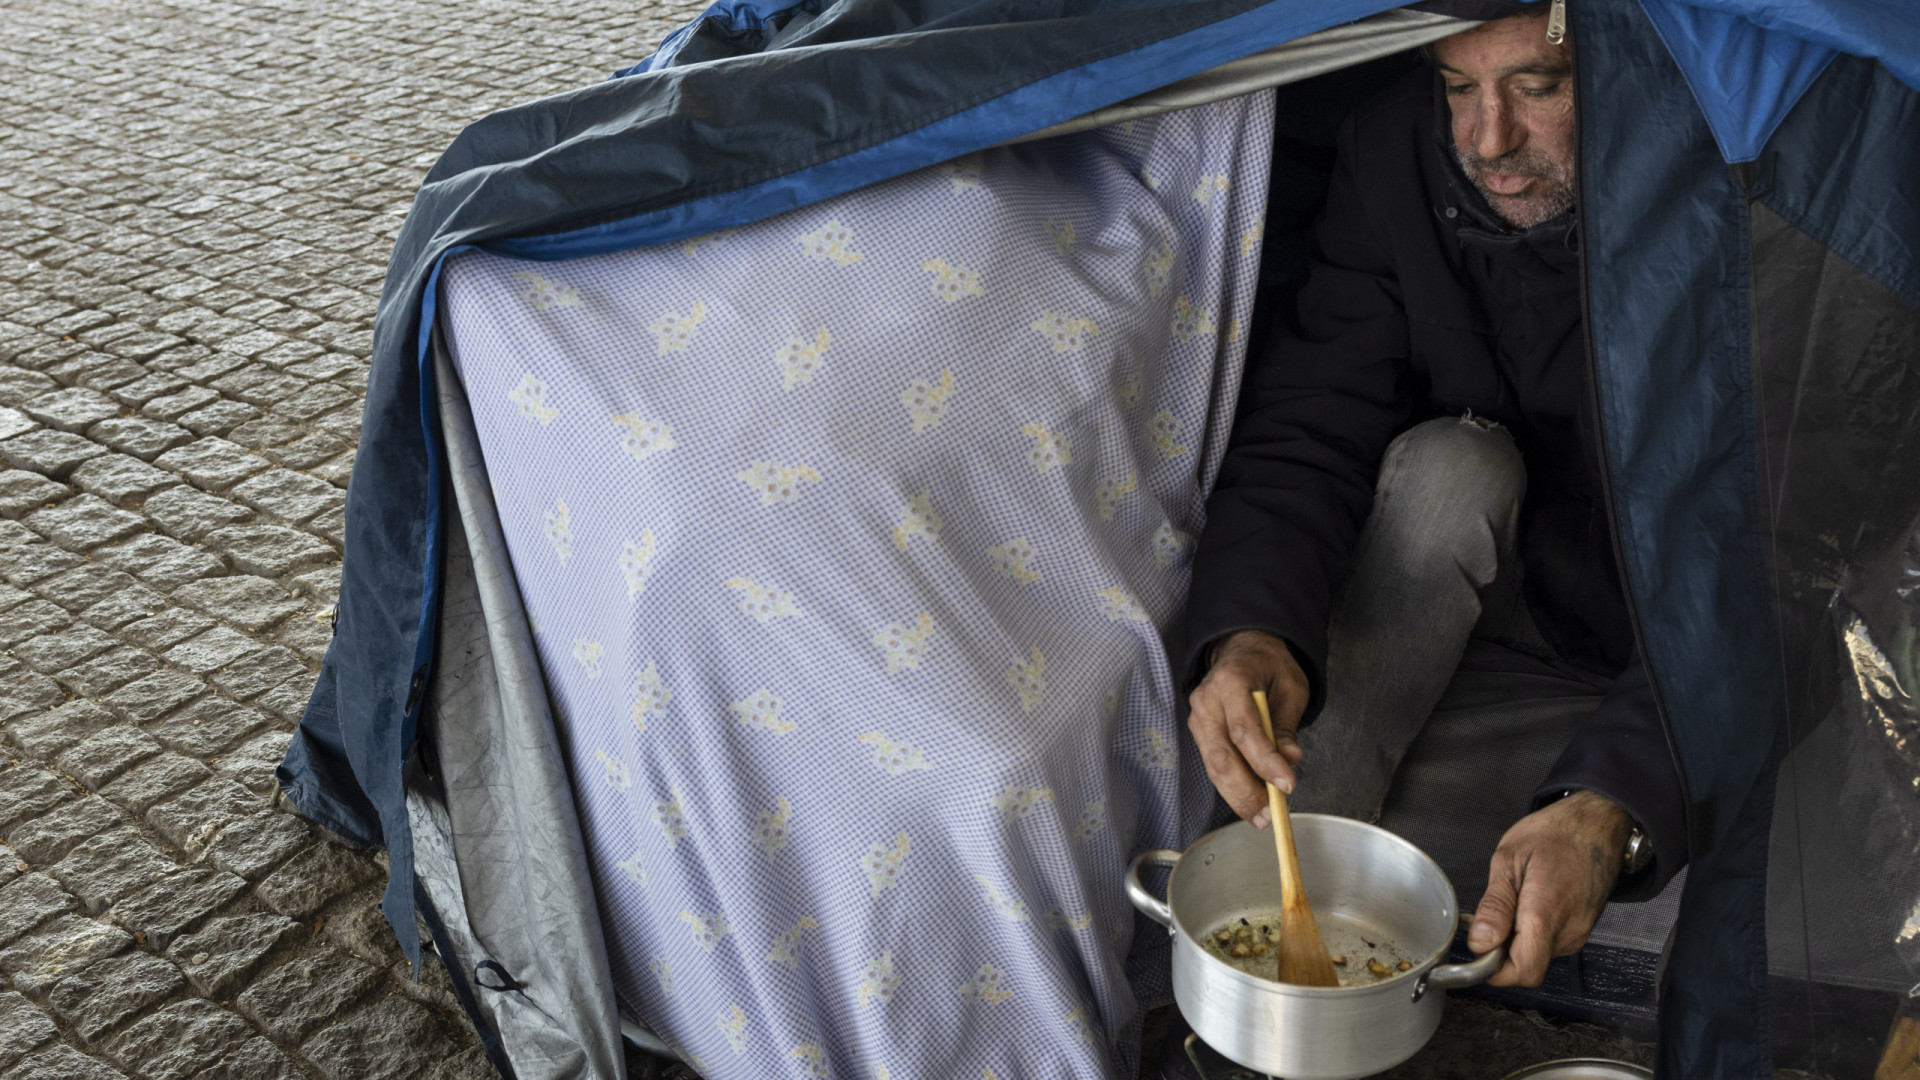 Sem-abrigo do Porto refugiados em tendas para fugir ao frio